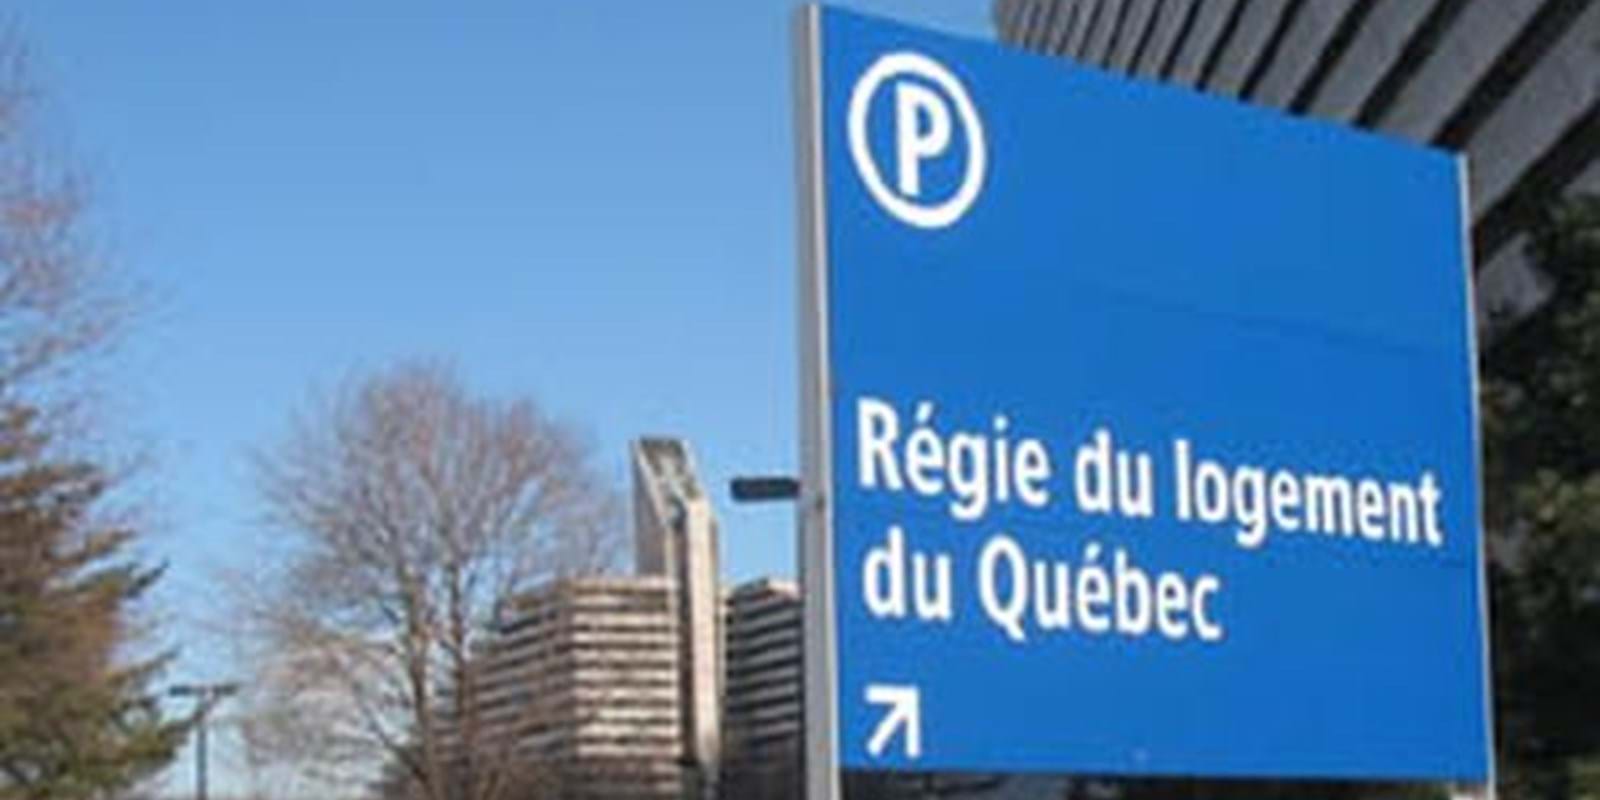 L'Association des Propriétaires du Québec rencontre la nouvelle Présidente de la Régie du logement